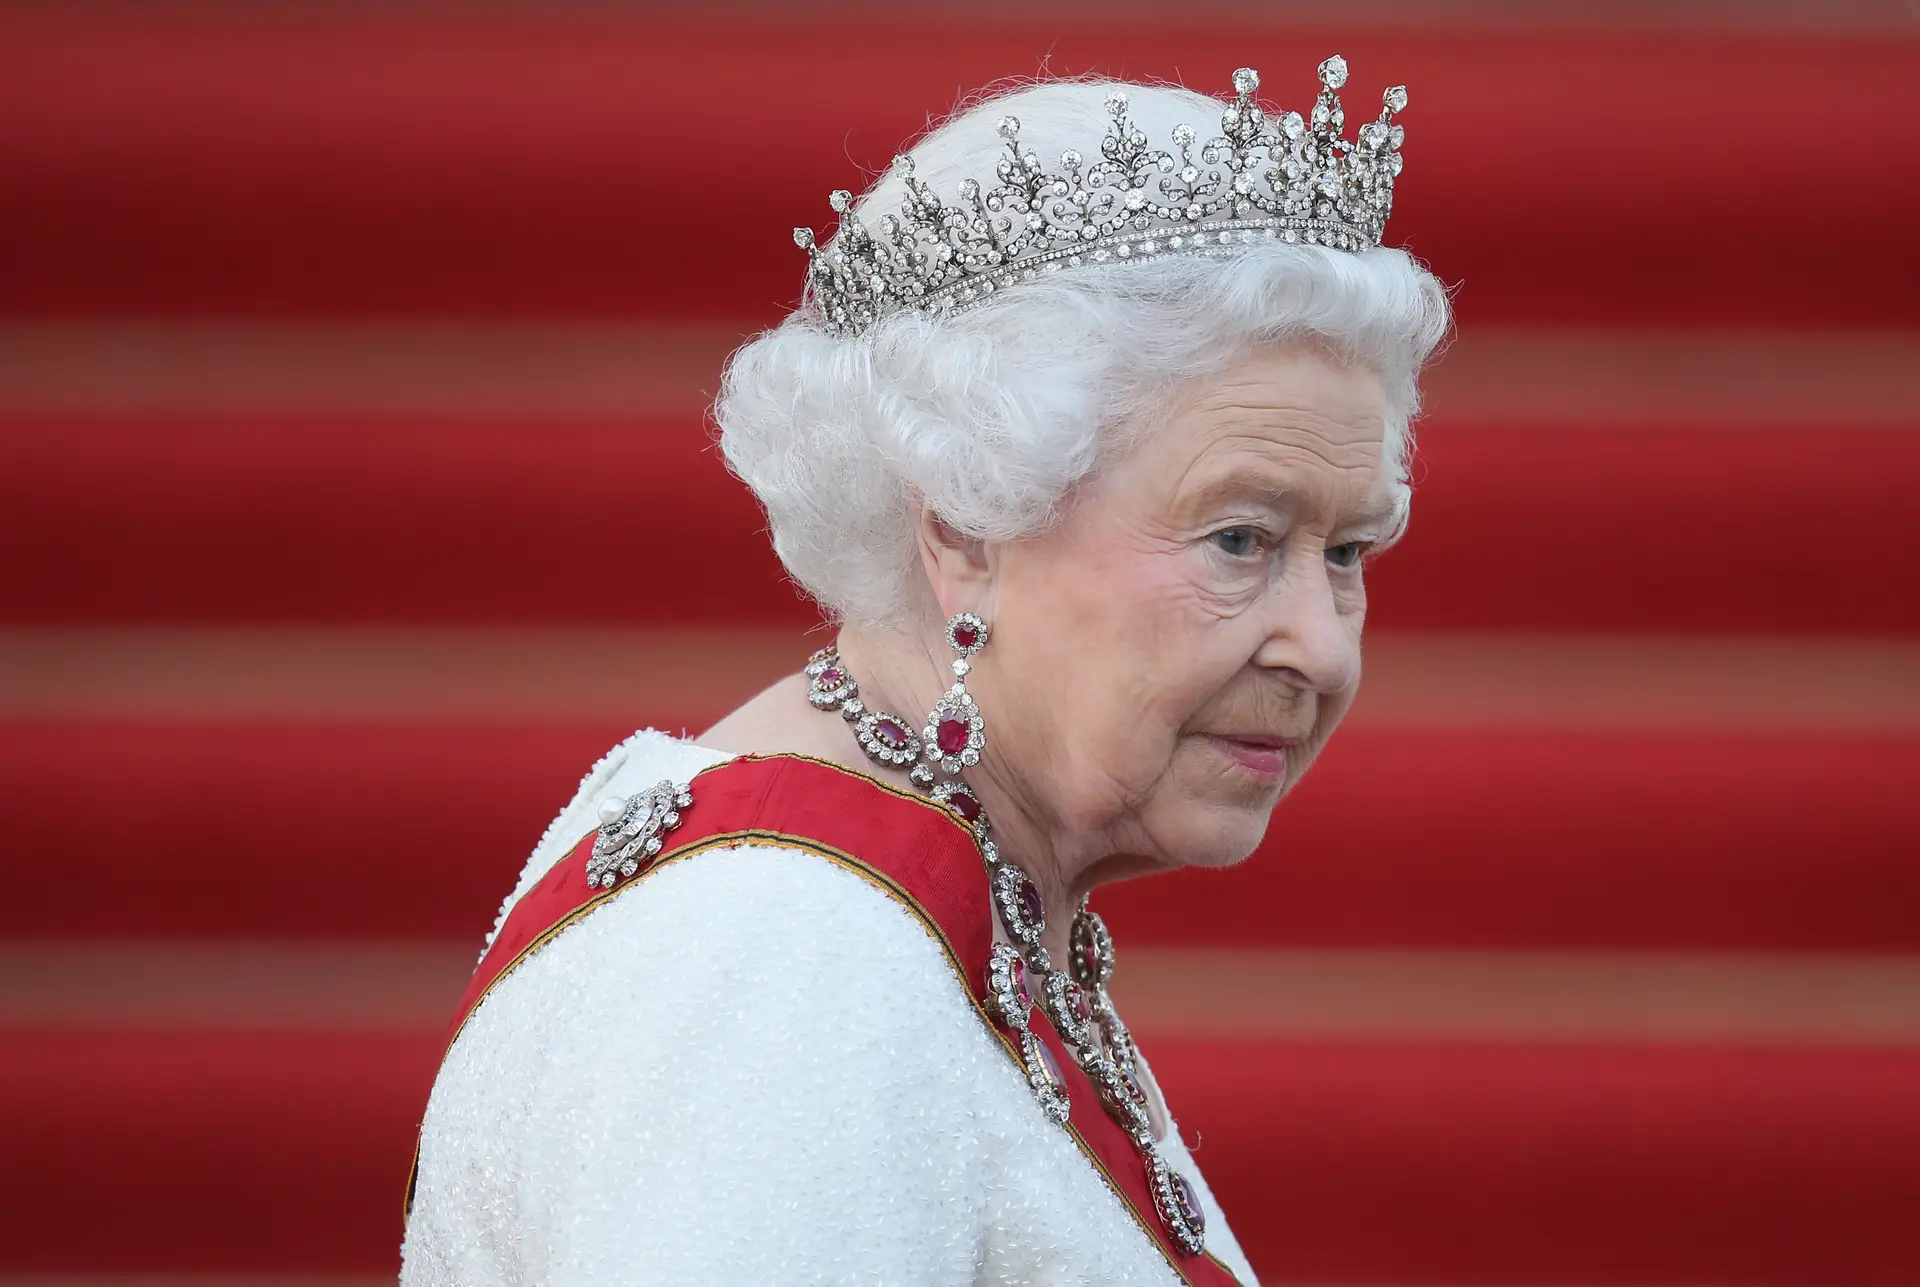 A rainha morreu: e agora? Conheça os detalhes da Operação “London Bridge”